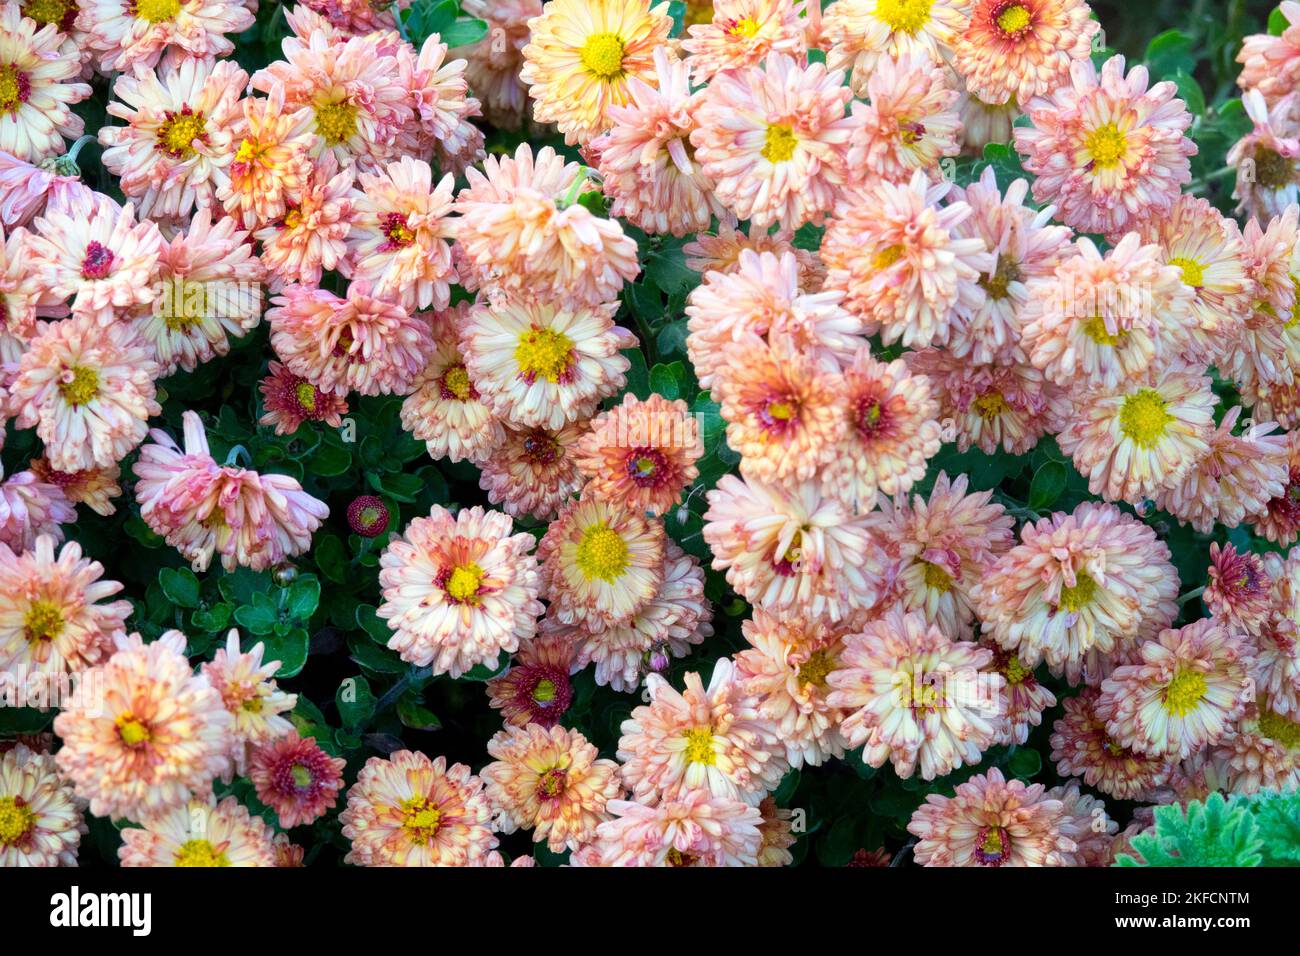 Autumn, Garden, Mums, Chrysanthemum Herbstbrokat Stock Photo